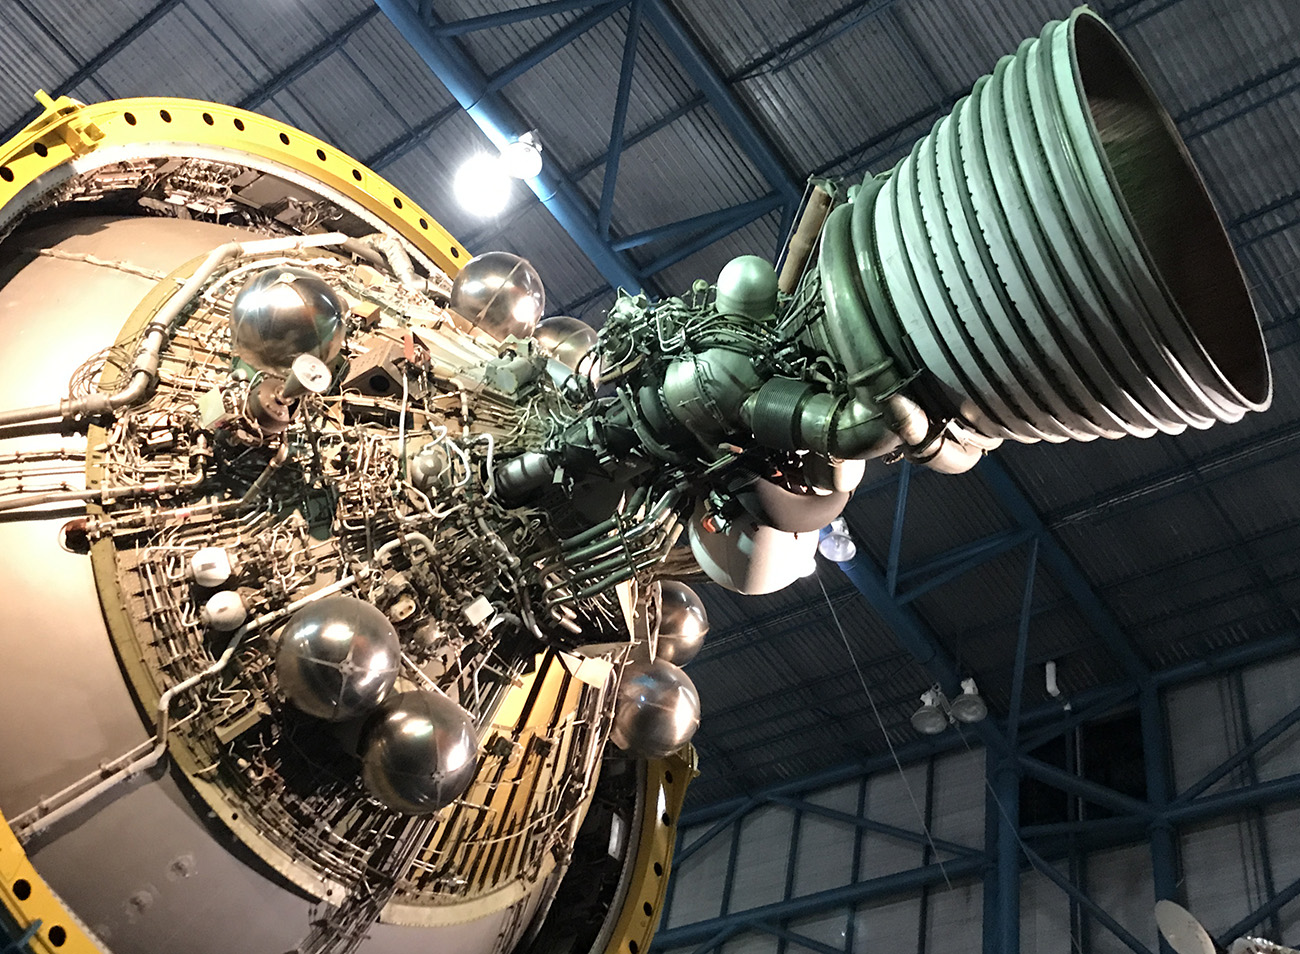 Saturn V stage 3 engine